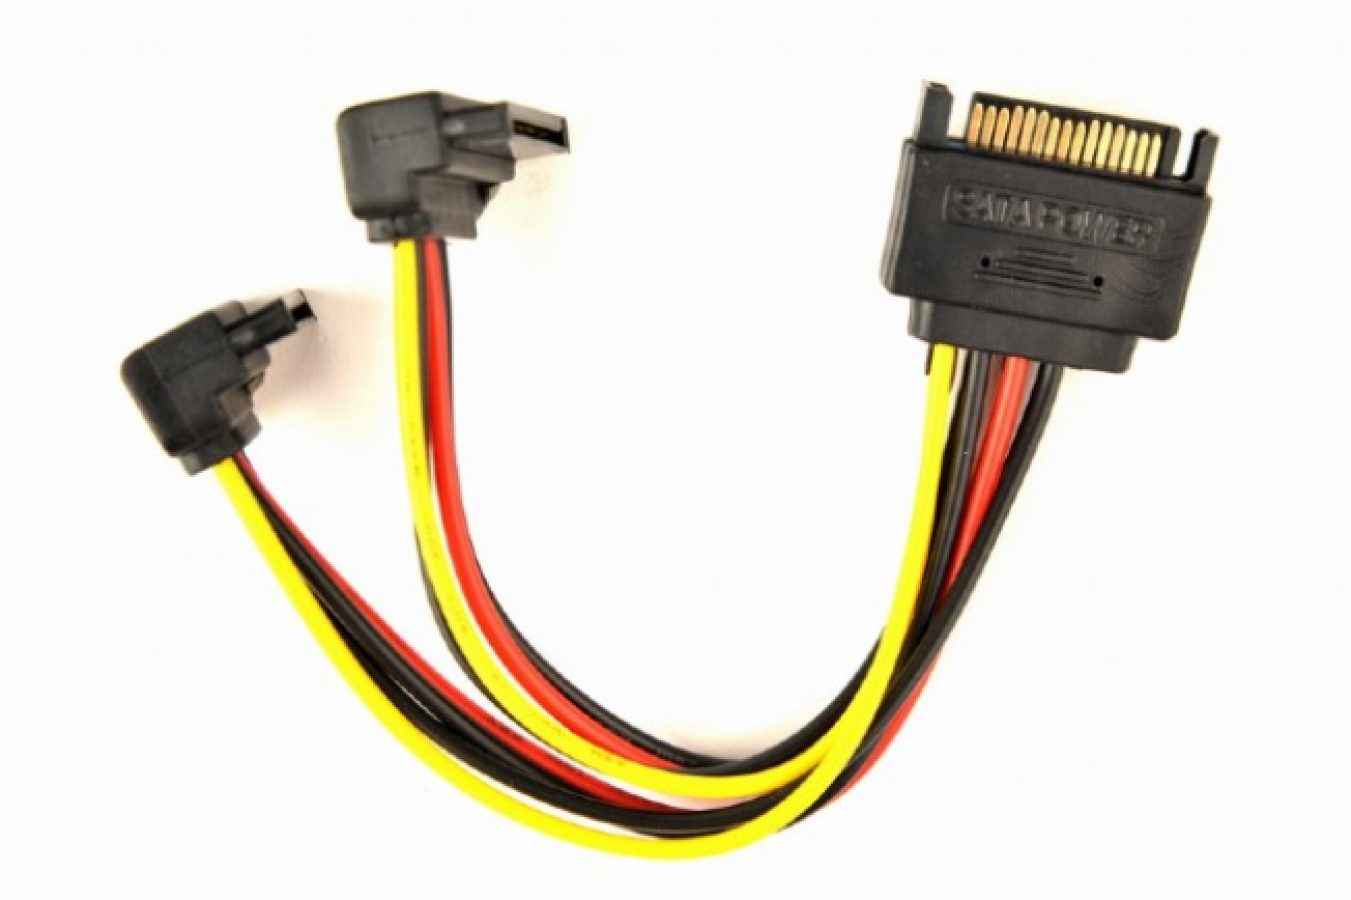 Сат питания. SATA Power Cable разветвитель. Кабель SATA 15 Pin с блоком питания. Разъем 15 пин сата. Разветвитель питания SATA 2 X SATA.